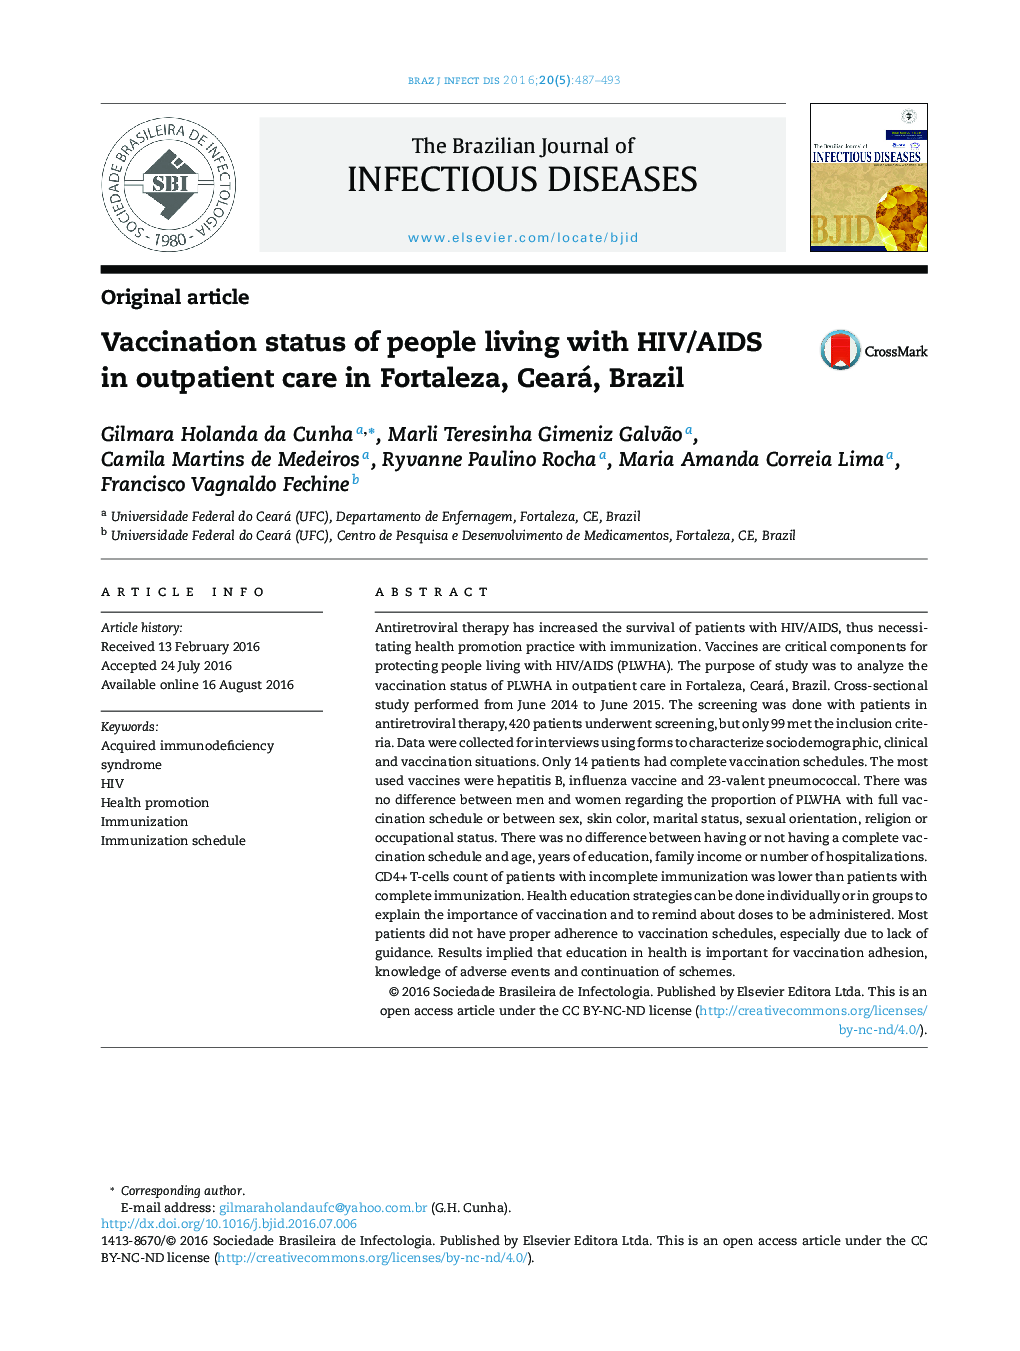 وضعیت واکسیناسیون افراد مبتلا به HIV/AIDS در بیماران سرپایی در فورتالزا، سیرا، برزیل